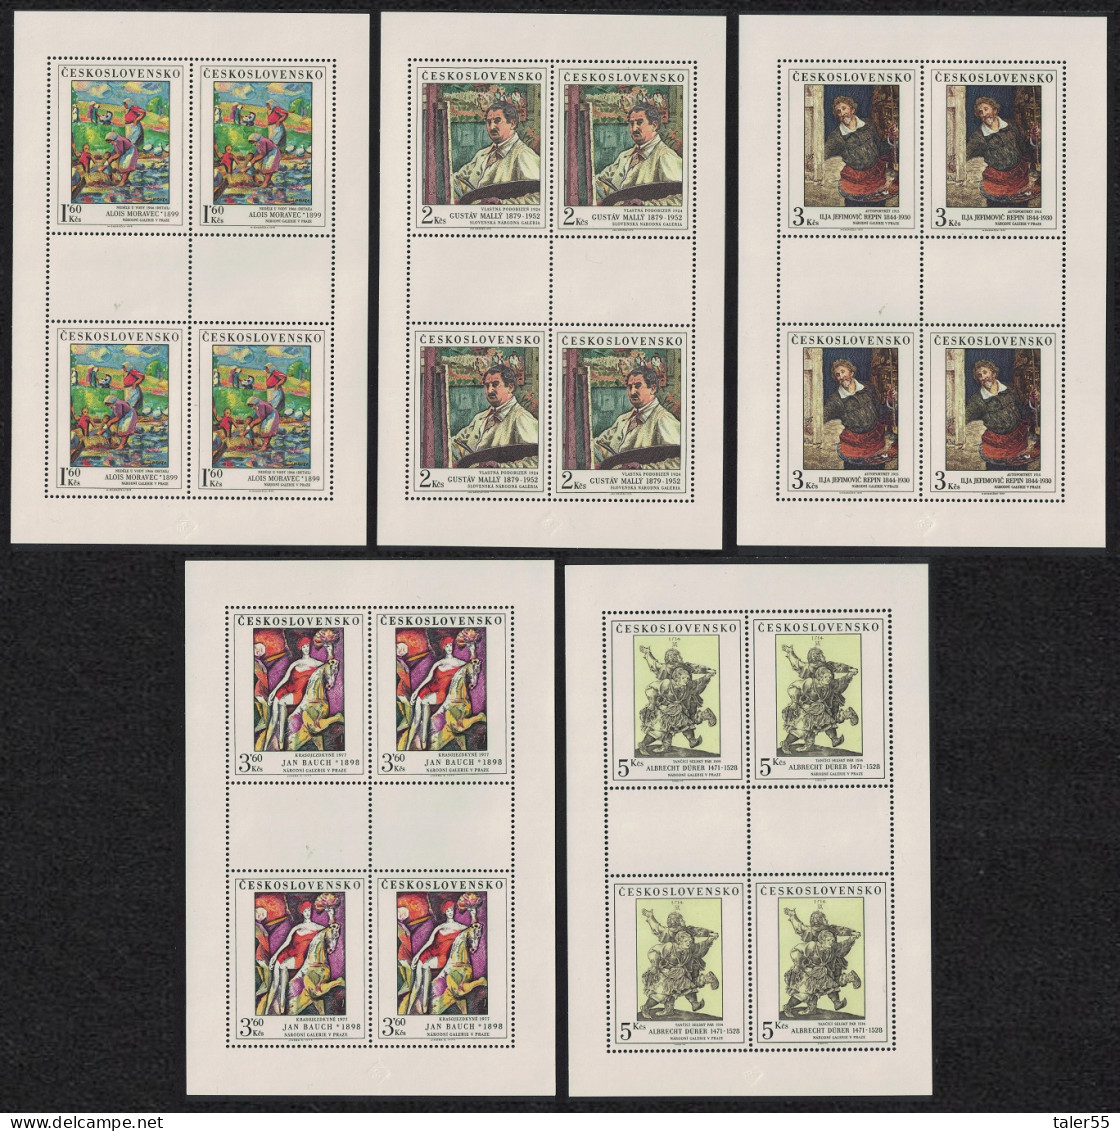 Czechoslovakia Art 13th Series 5 Sheetlets 1979 MNH SG#2495-2499 - Nuovi